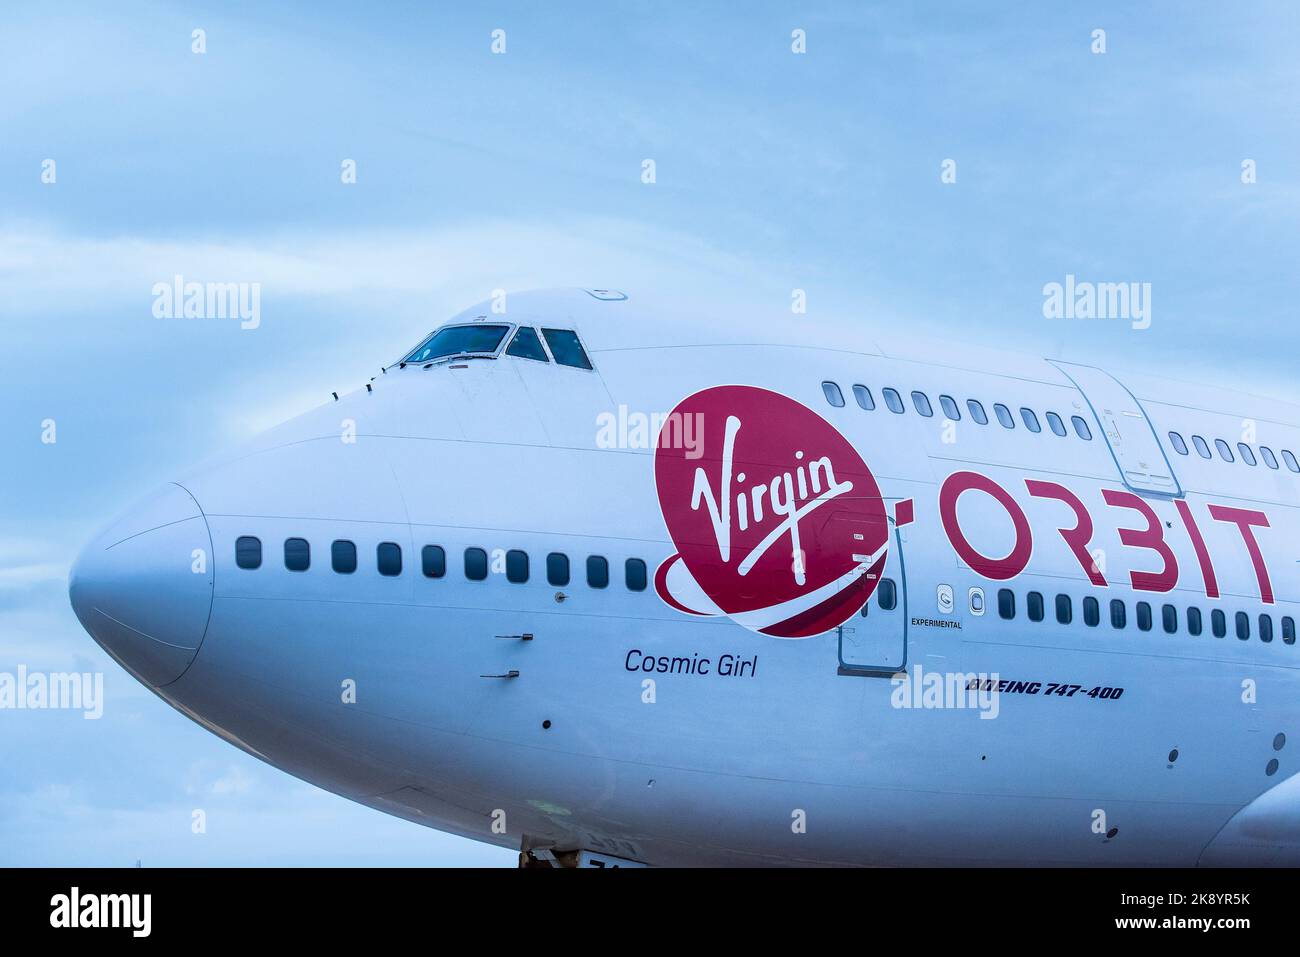 Nahaufnahme des Virgin-Logos auf dem Rumpf der Virgin Orbit, Cosmic Girl, einer 747-400, die zu einer Raketenstartplattform umgebaut wurde, die rollt Stockfoto